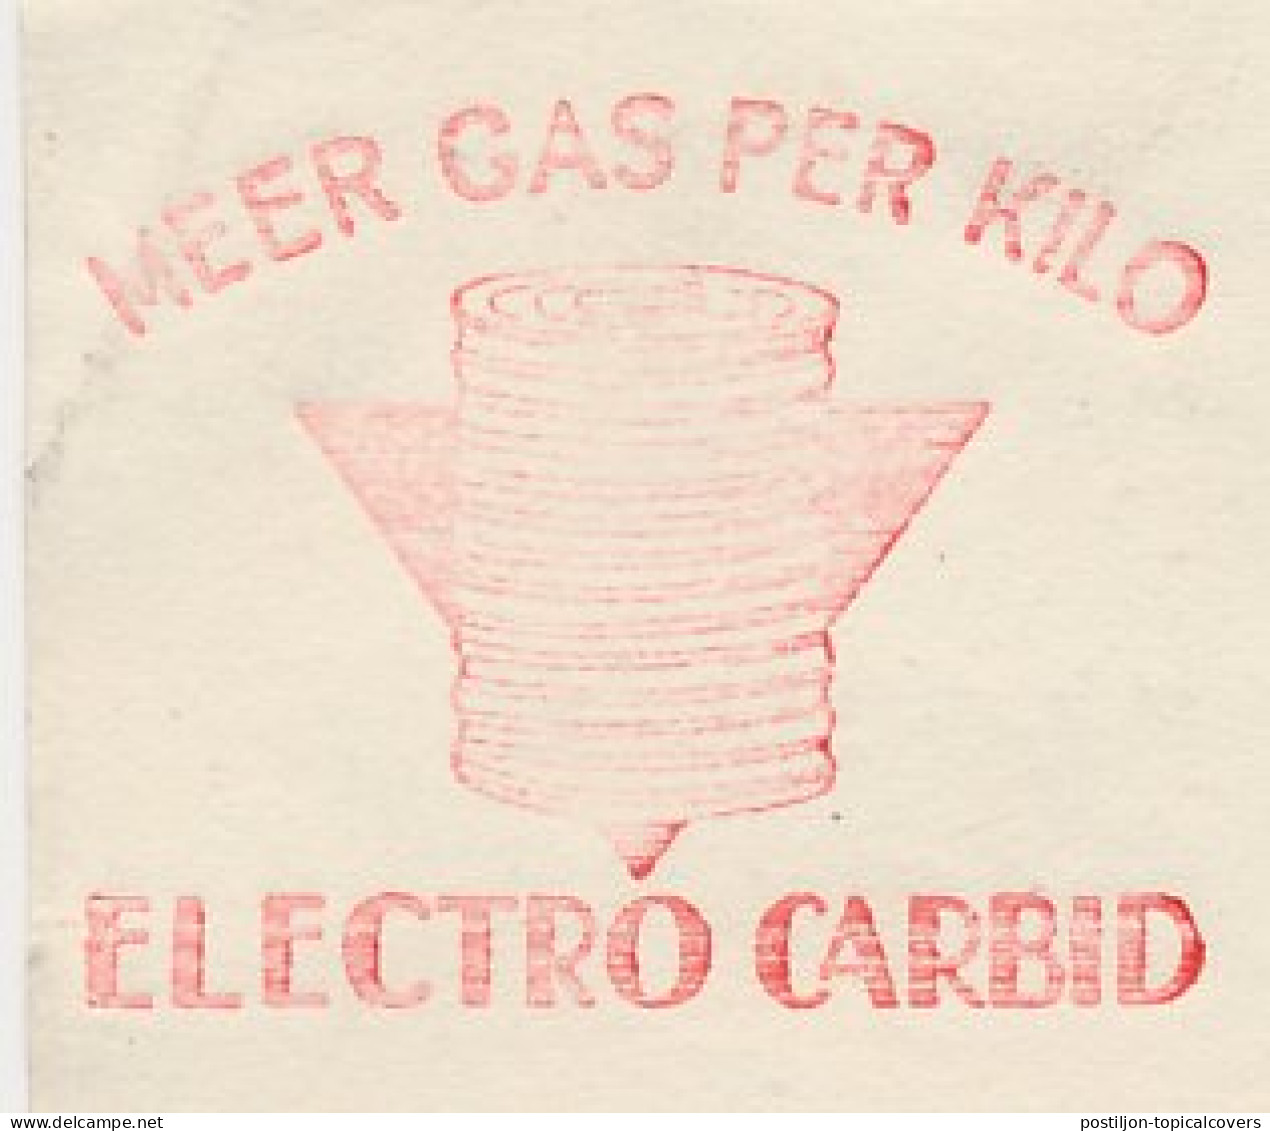 Meter Card Netherlands 1943 Electro Carbide - Gas - Amsterdam - Scheikunde